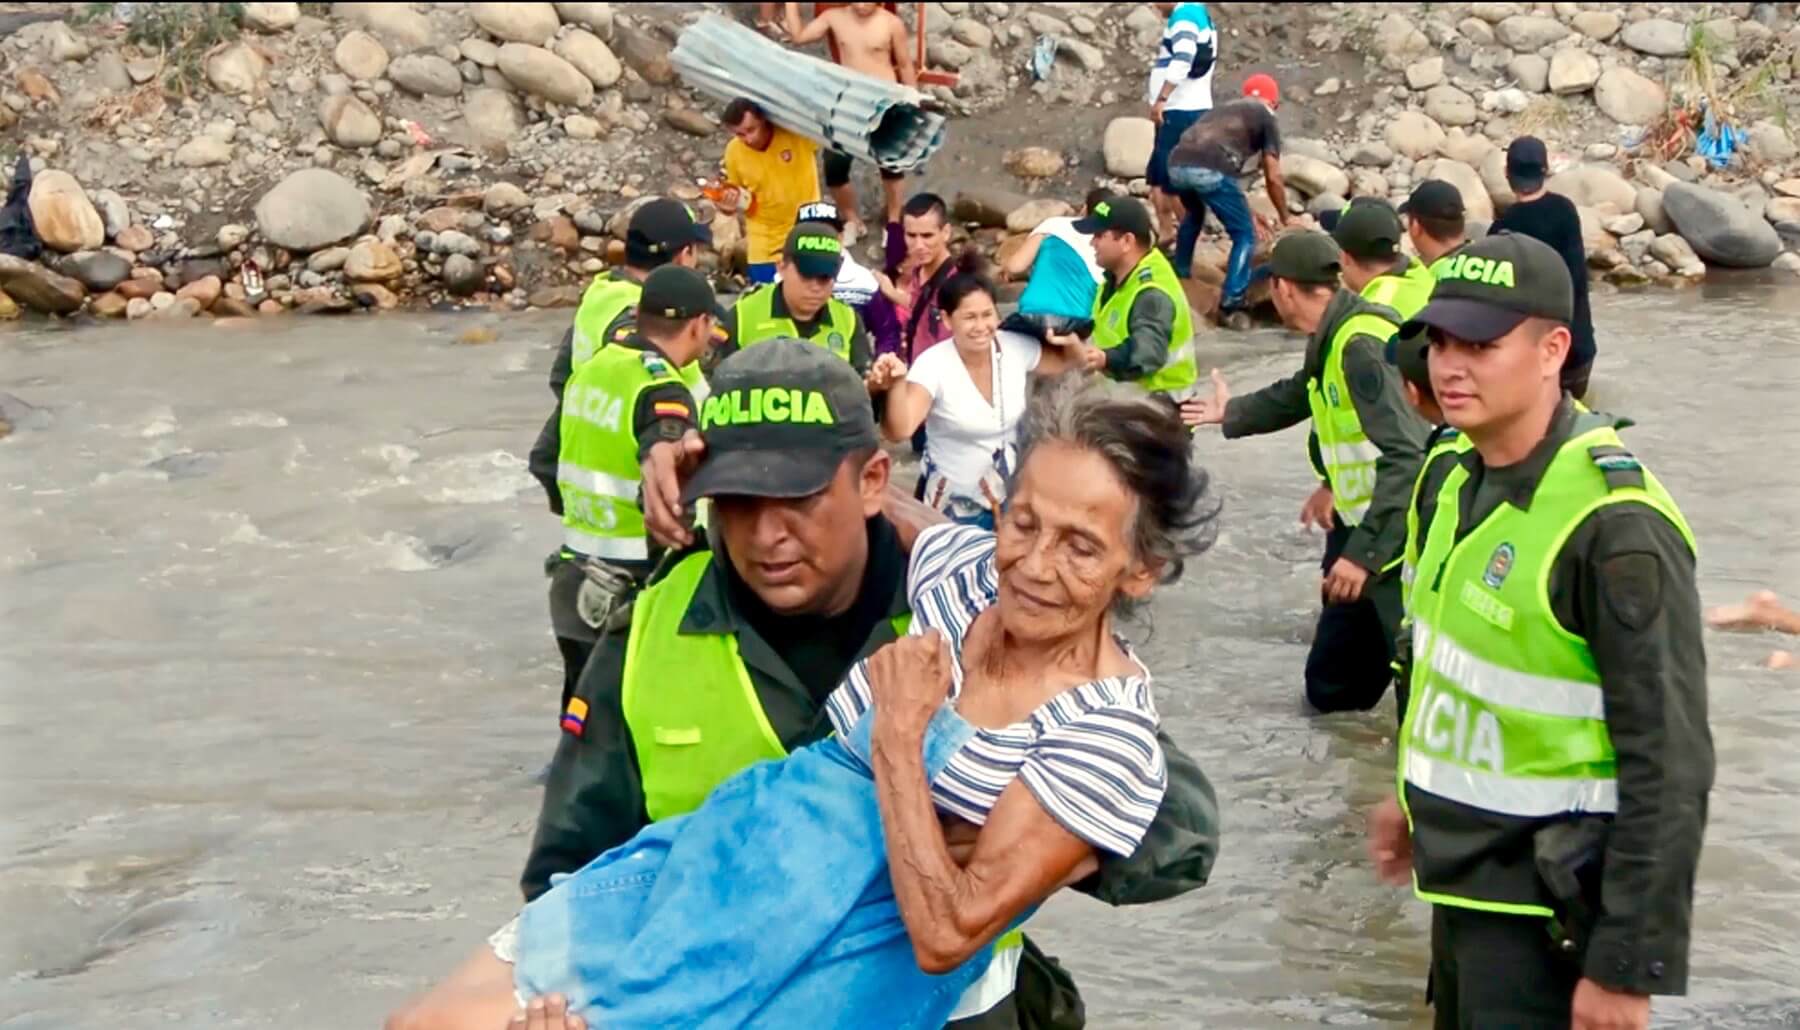 Venezolaanse vluchtelingen worden geholpen door politieagenten in Colombia. ©Wikimedia